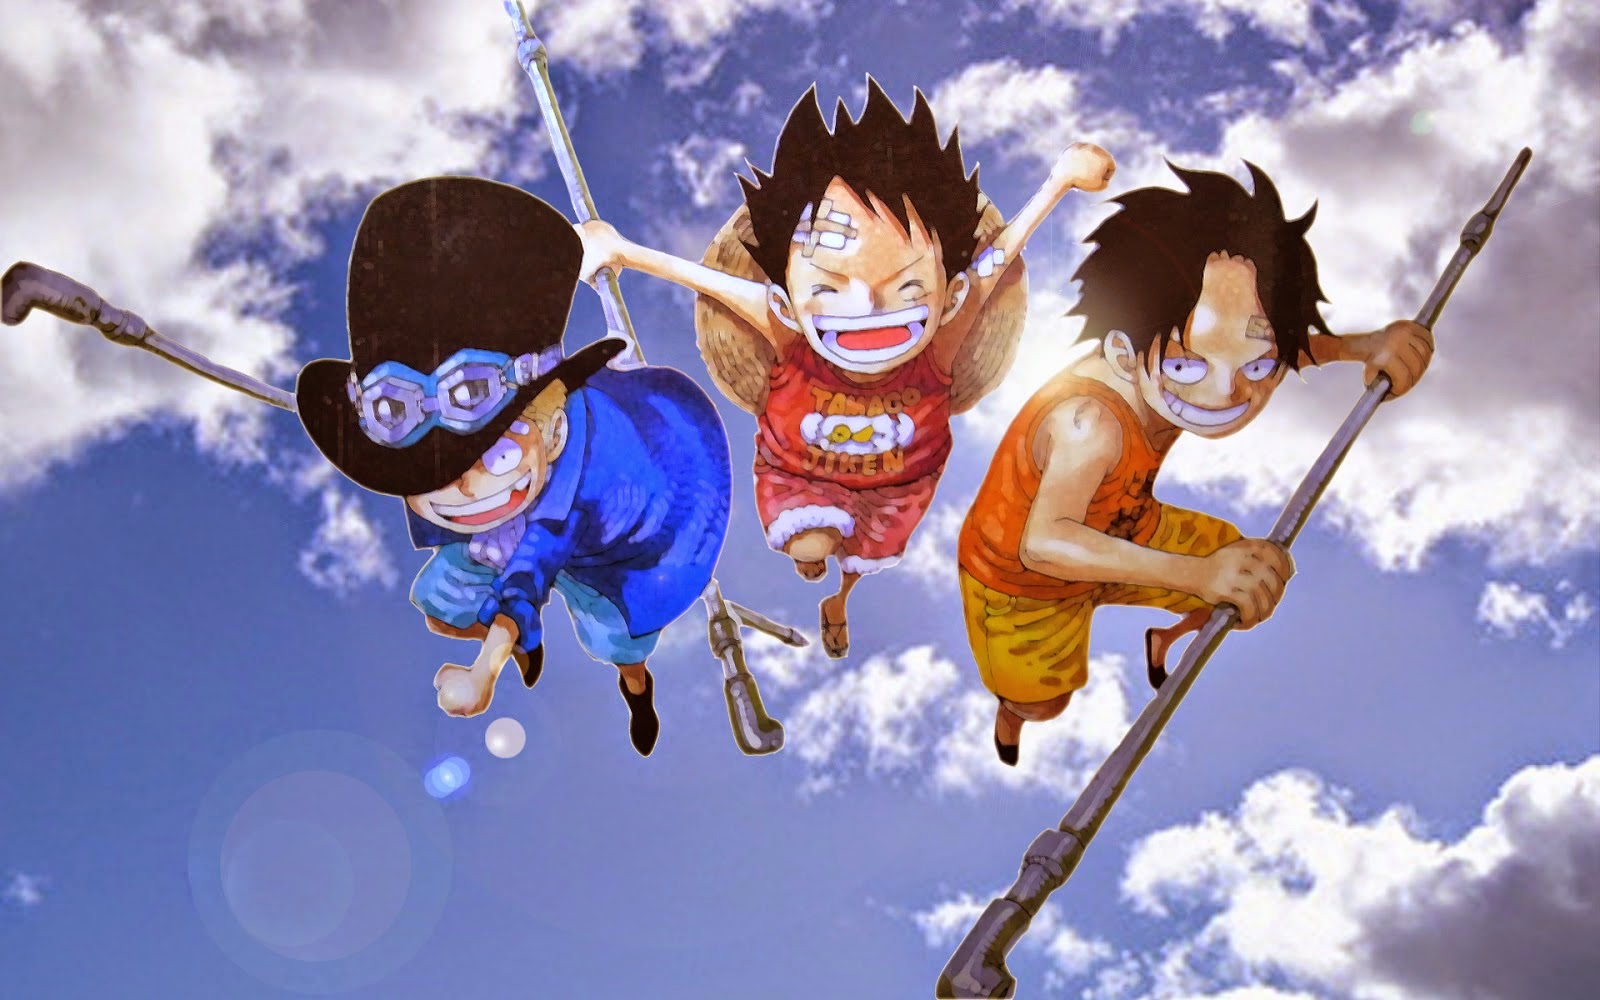 Hình nền One Piece cực chất full HD cho ae mê anime này